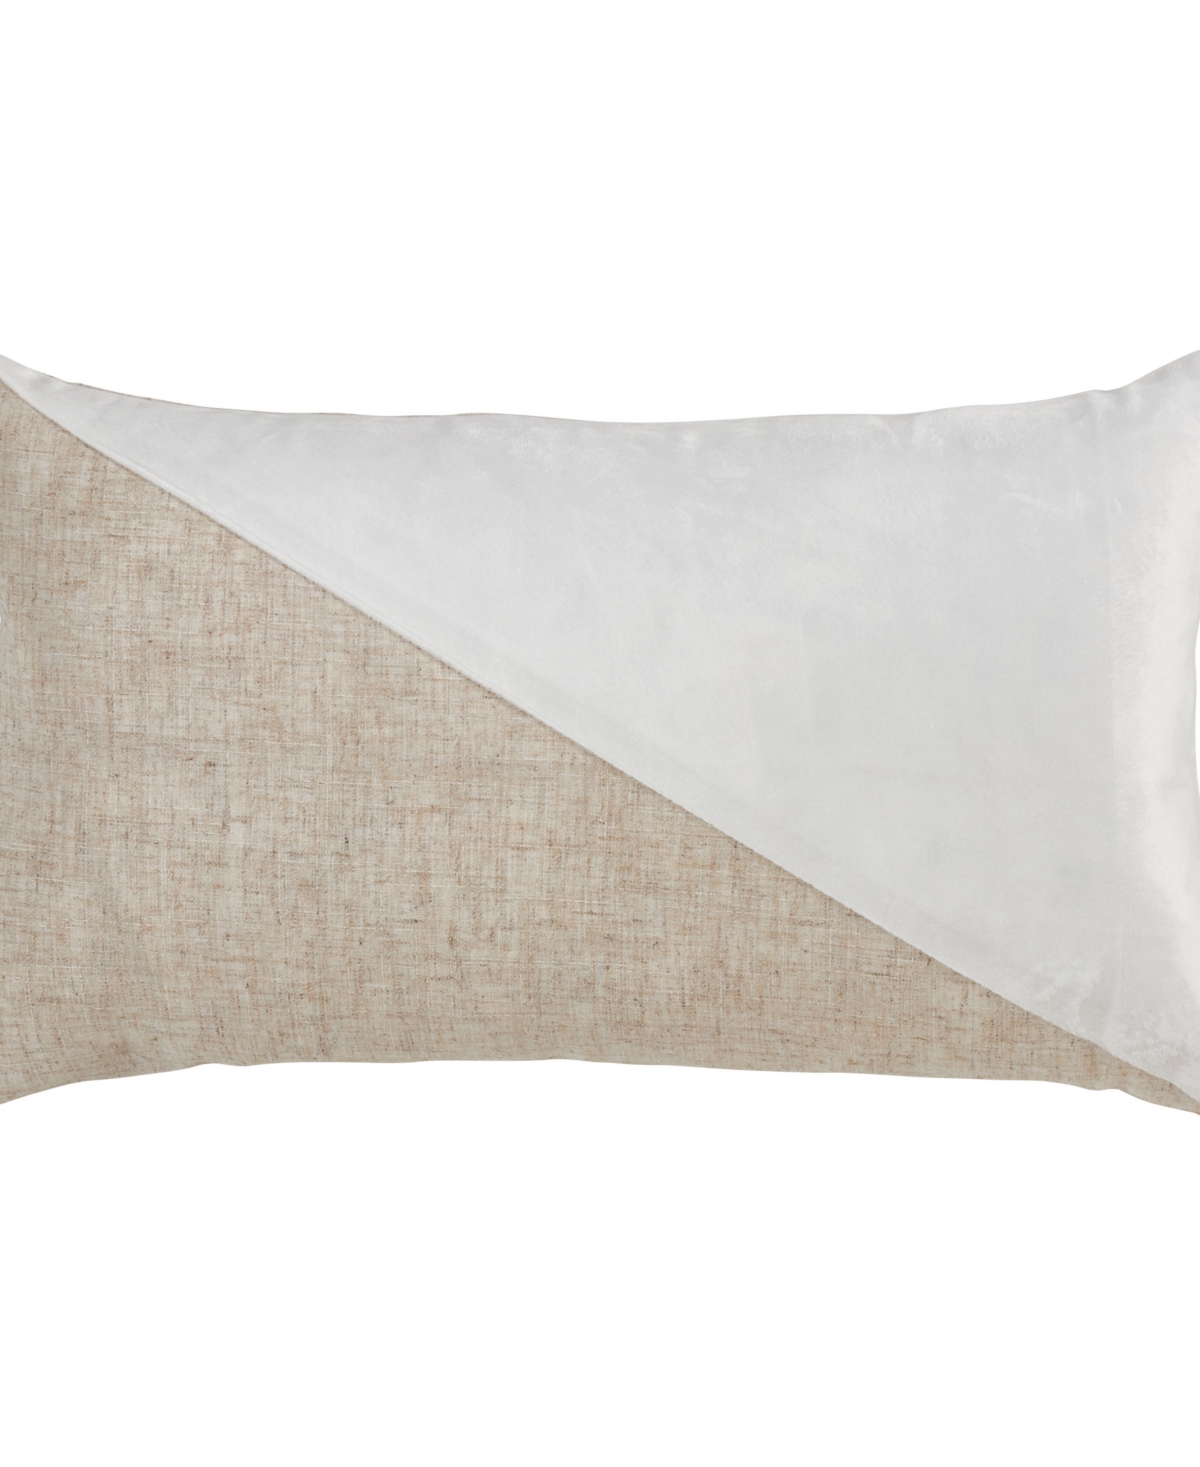 Saro Lifestyle Velvet-like Geometric Decorative Pillow, 12" X 20" In White